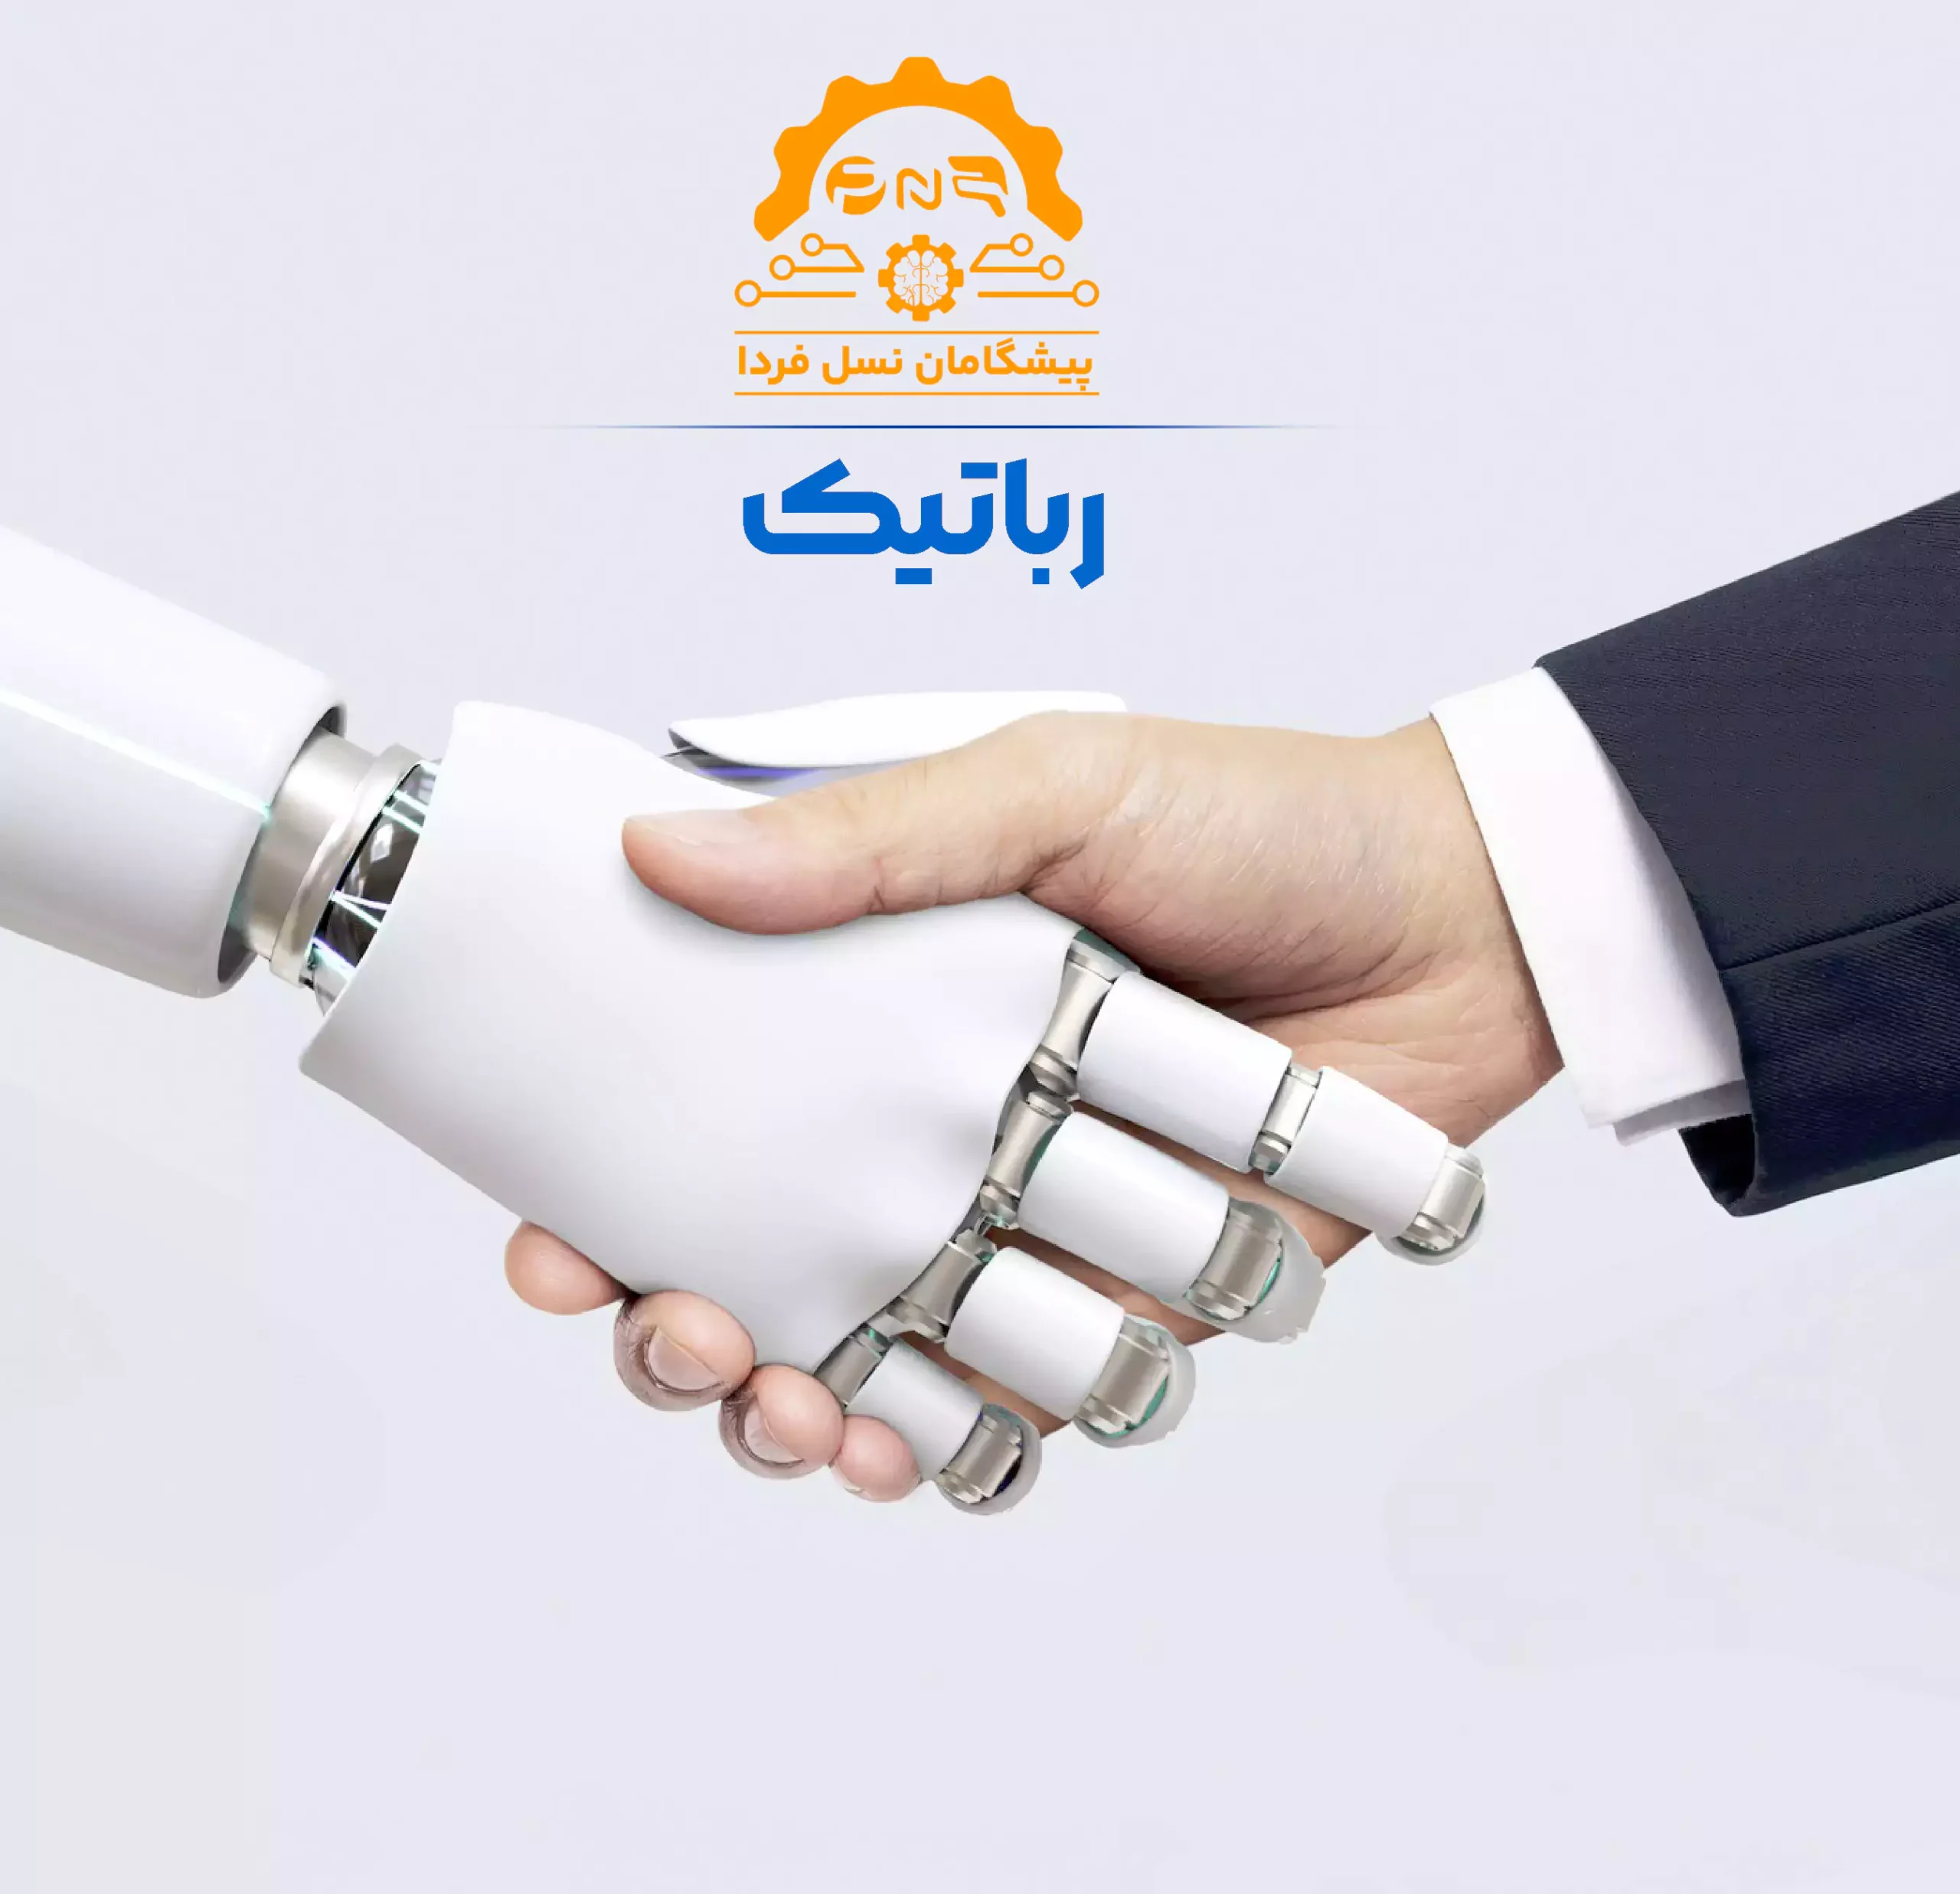 دست دادن یک ربات به انسان در پیشگامان نسل فردا